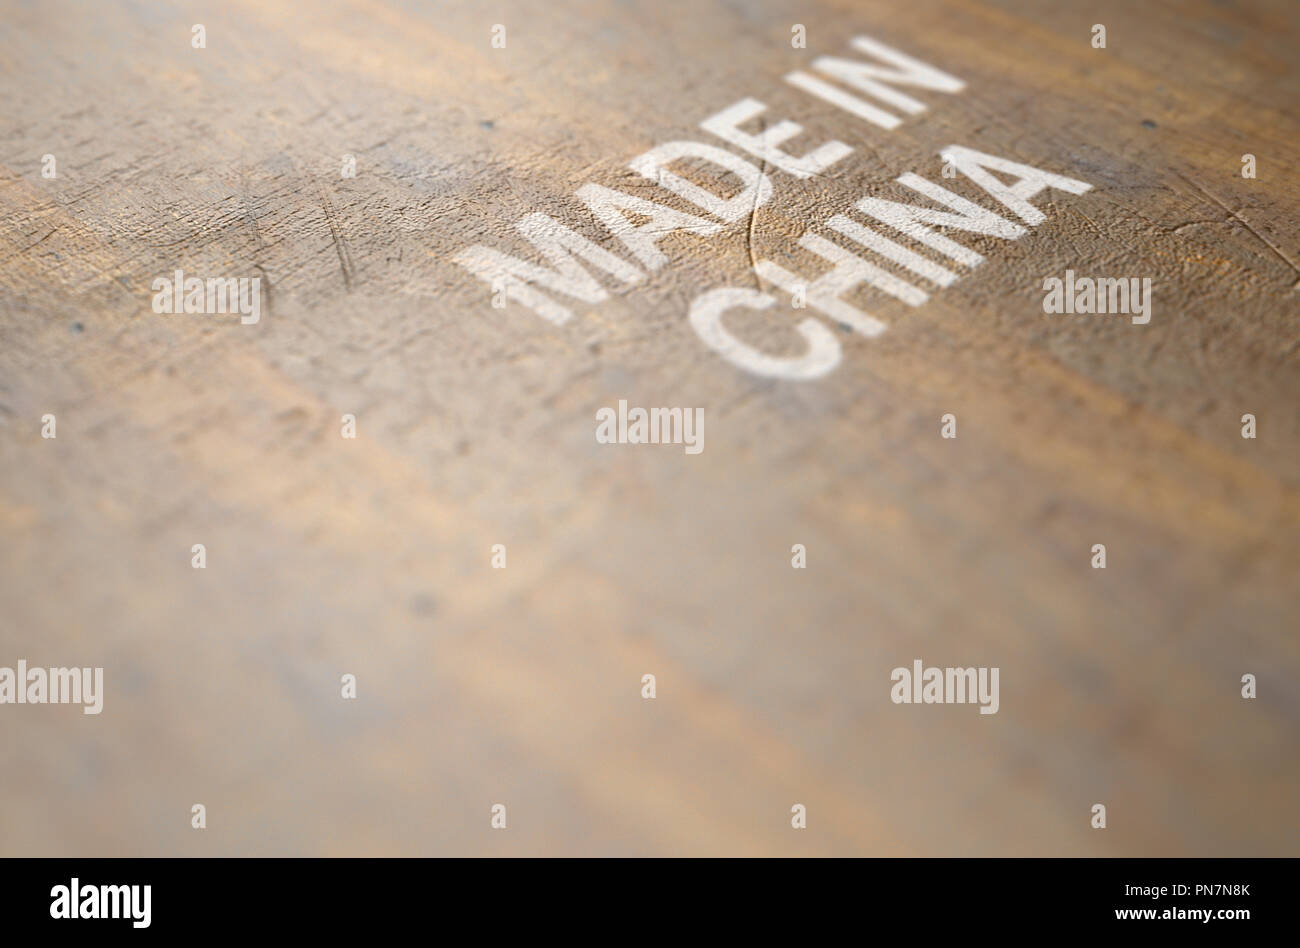 Eine extreme Nahaufnahme von einem abgenutzten drucken Zeichen, dass in China auf eine flache hölzerne Produkt Oberfläche liest - 3D-Rendering Stockfoto